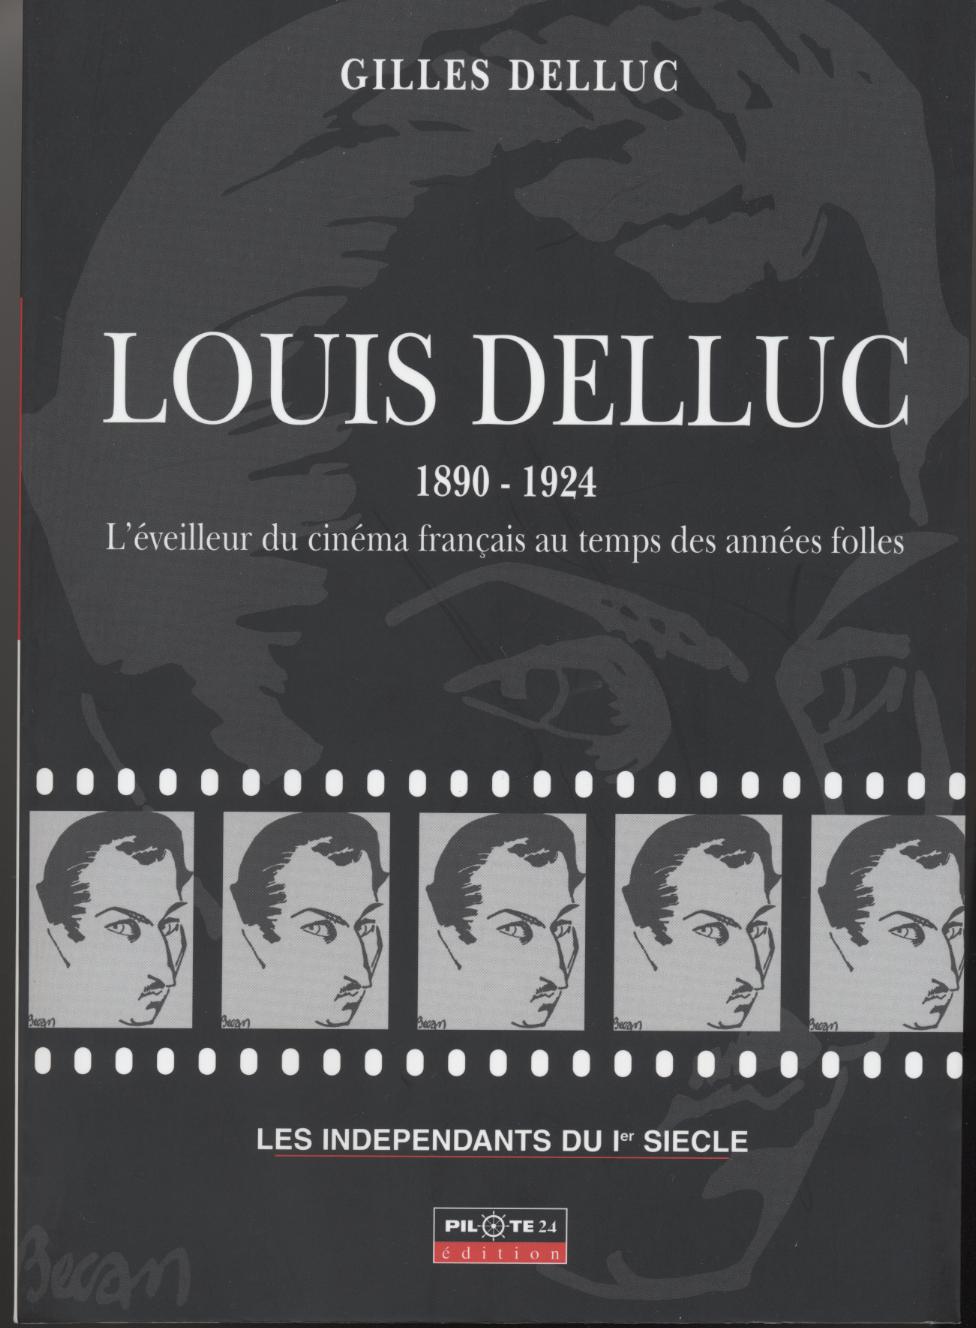 Les indépendants du 1er siècle - Biographie de Louis DELLUC